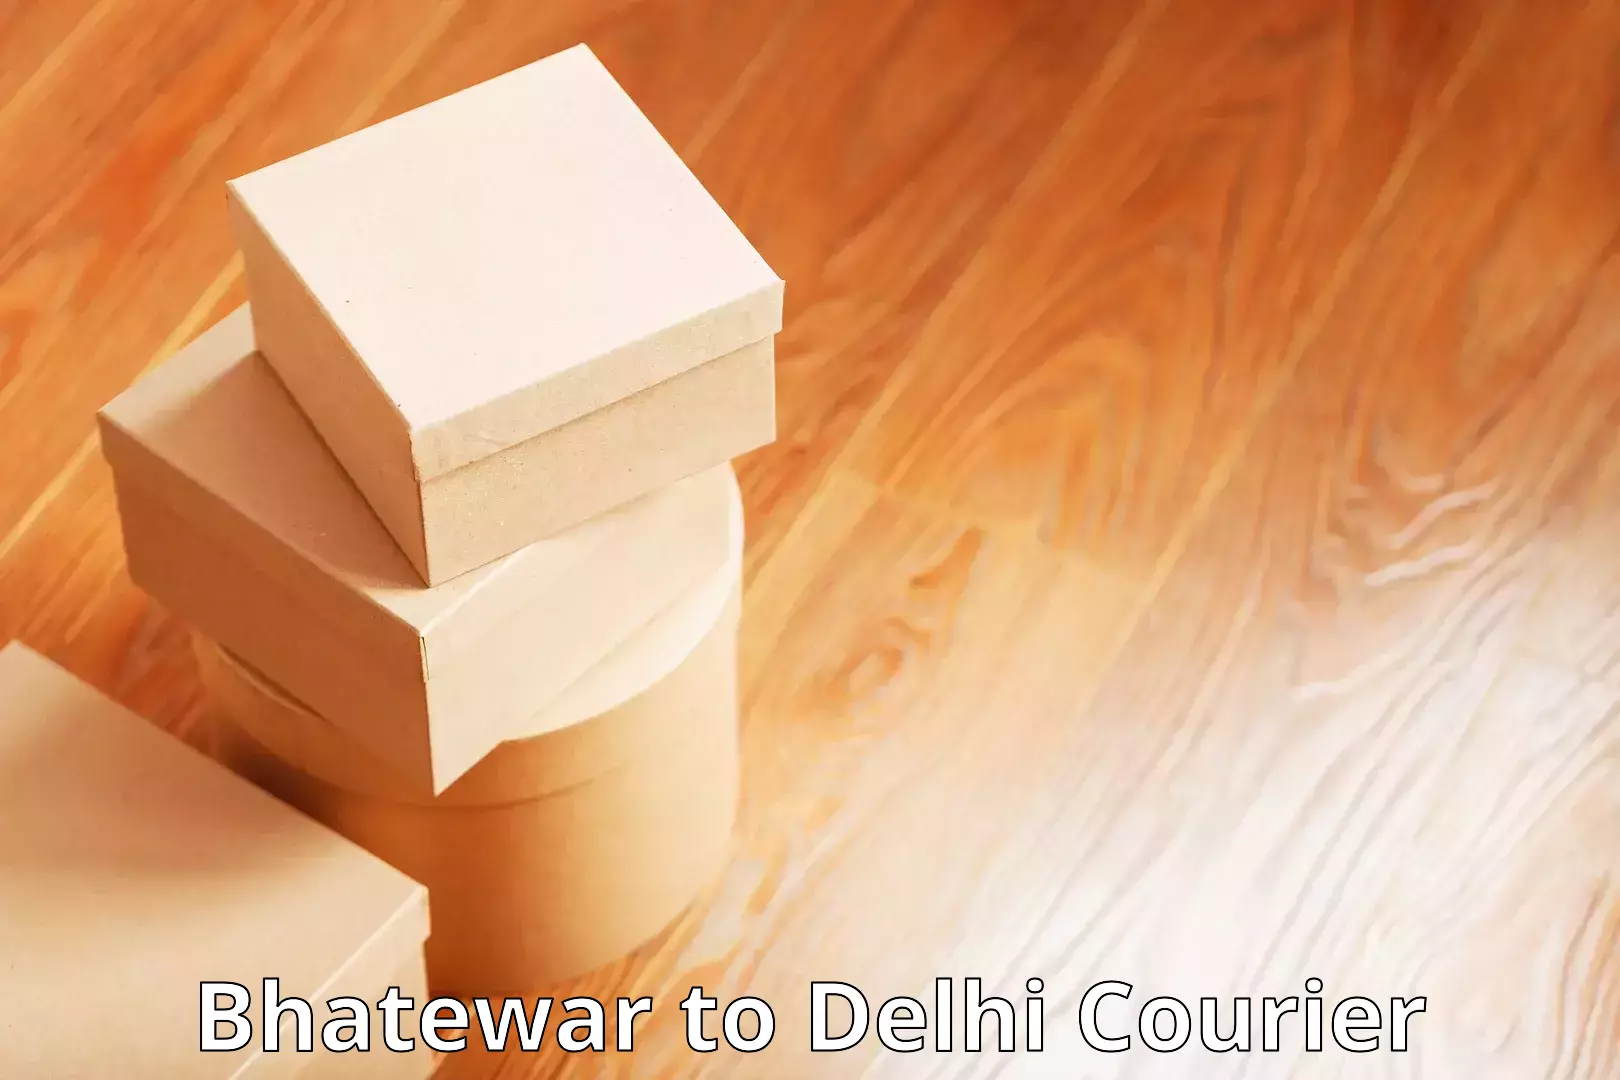 High-speed parcel service Bhatewar to Delhi